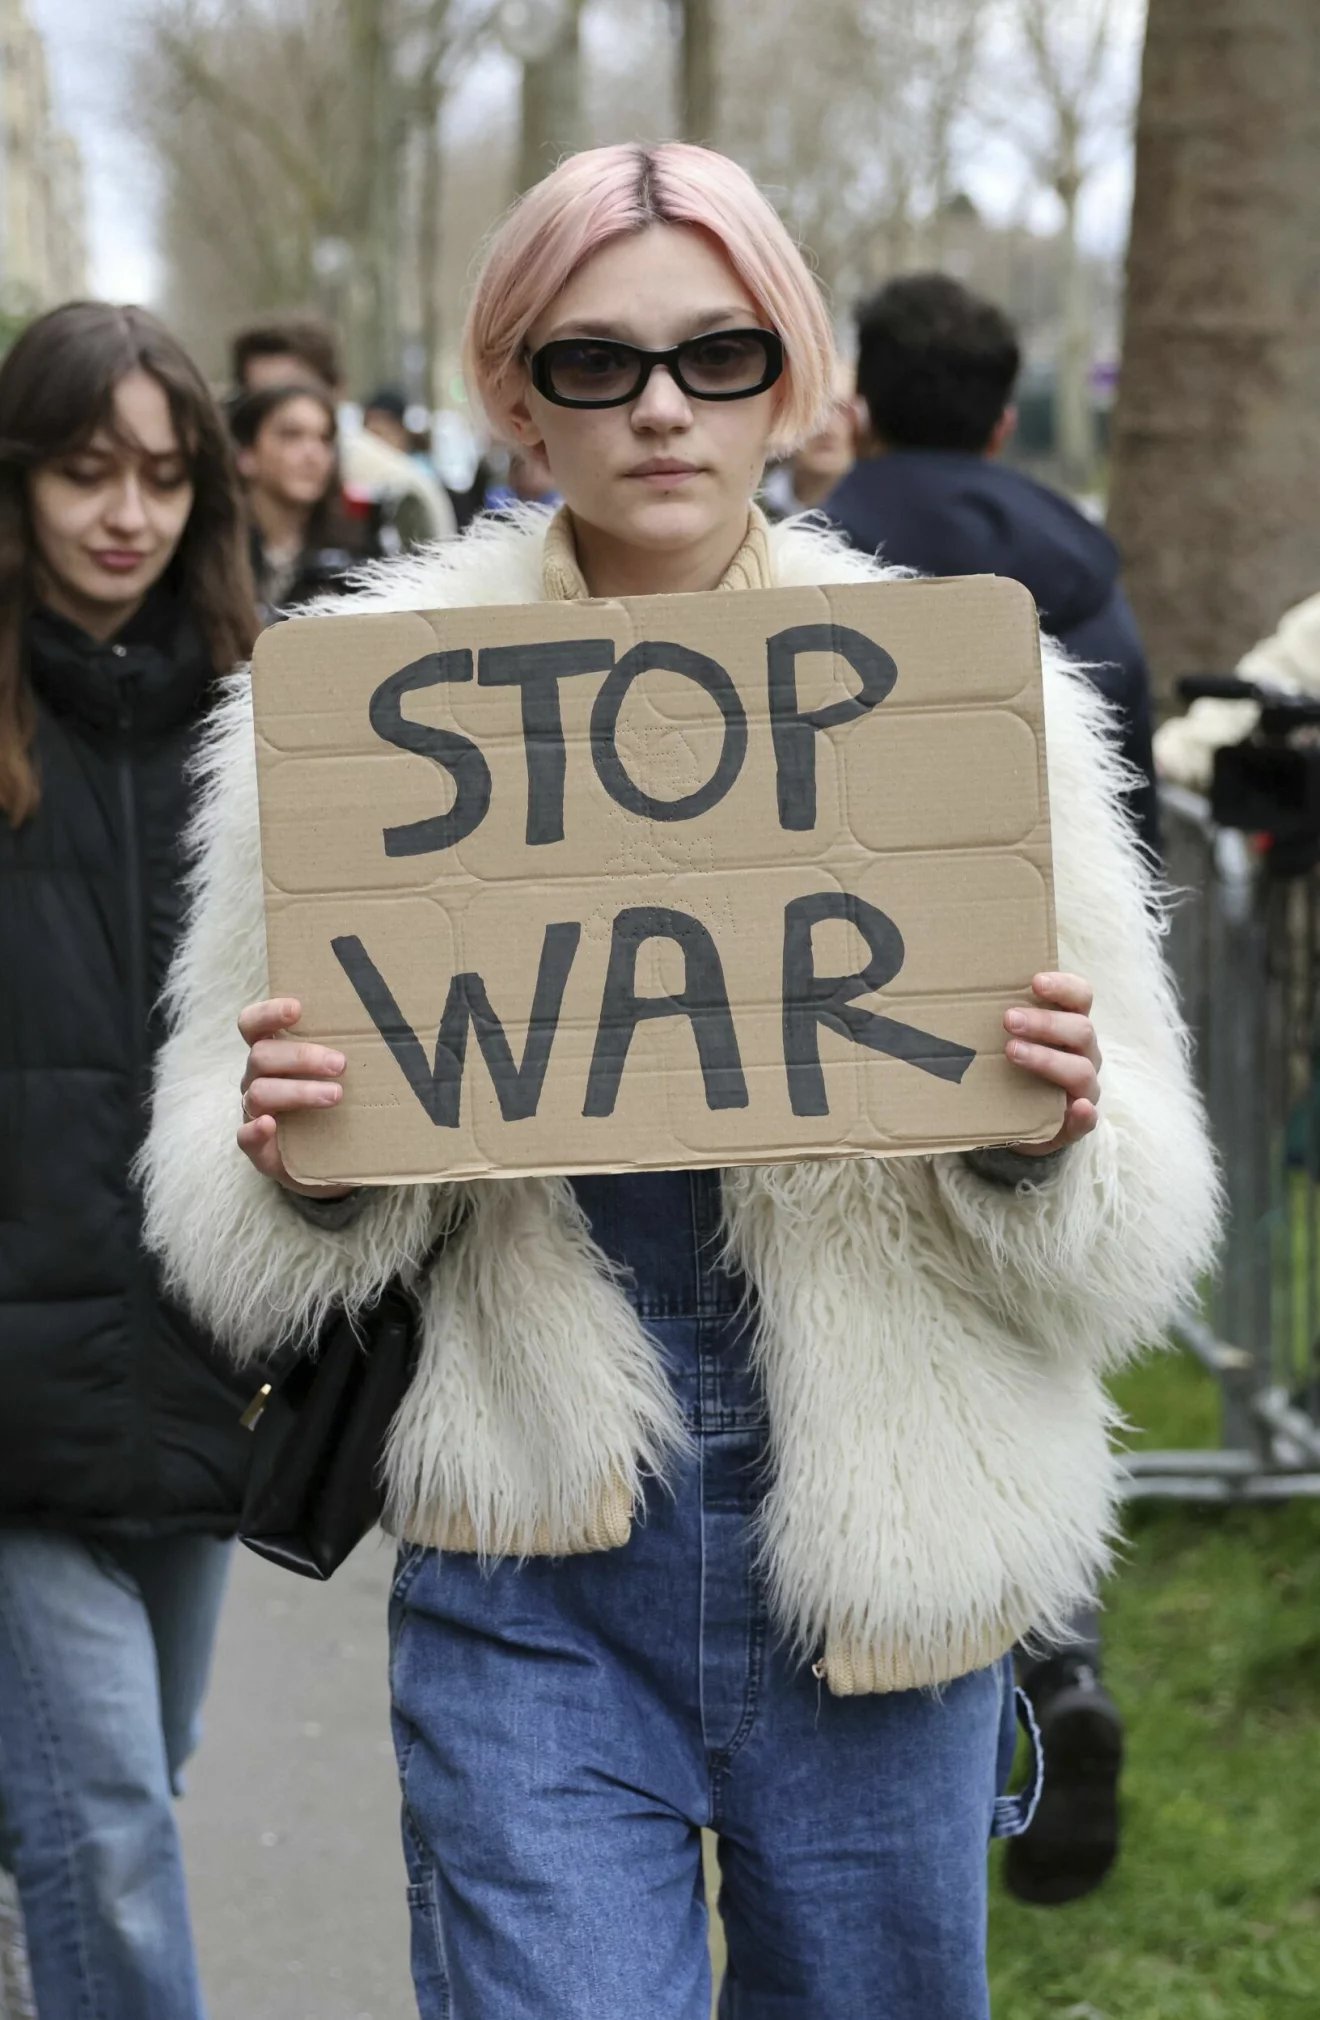 modell med protestskylt under modeveckan där det står "stop war" mot kriget i ukraina